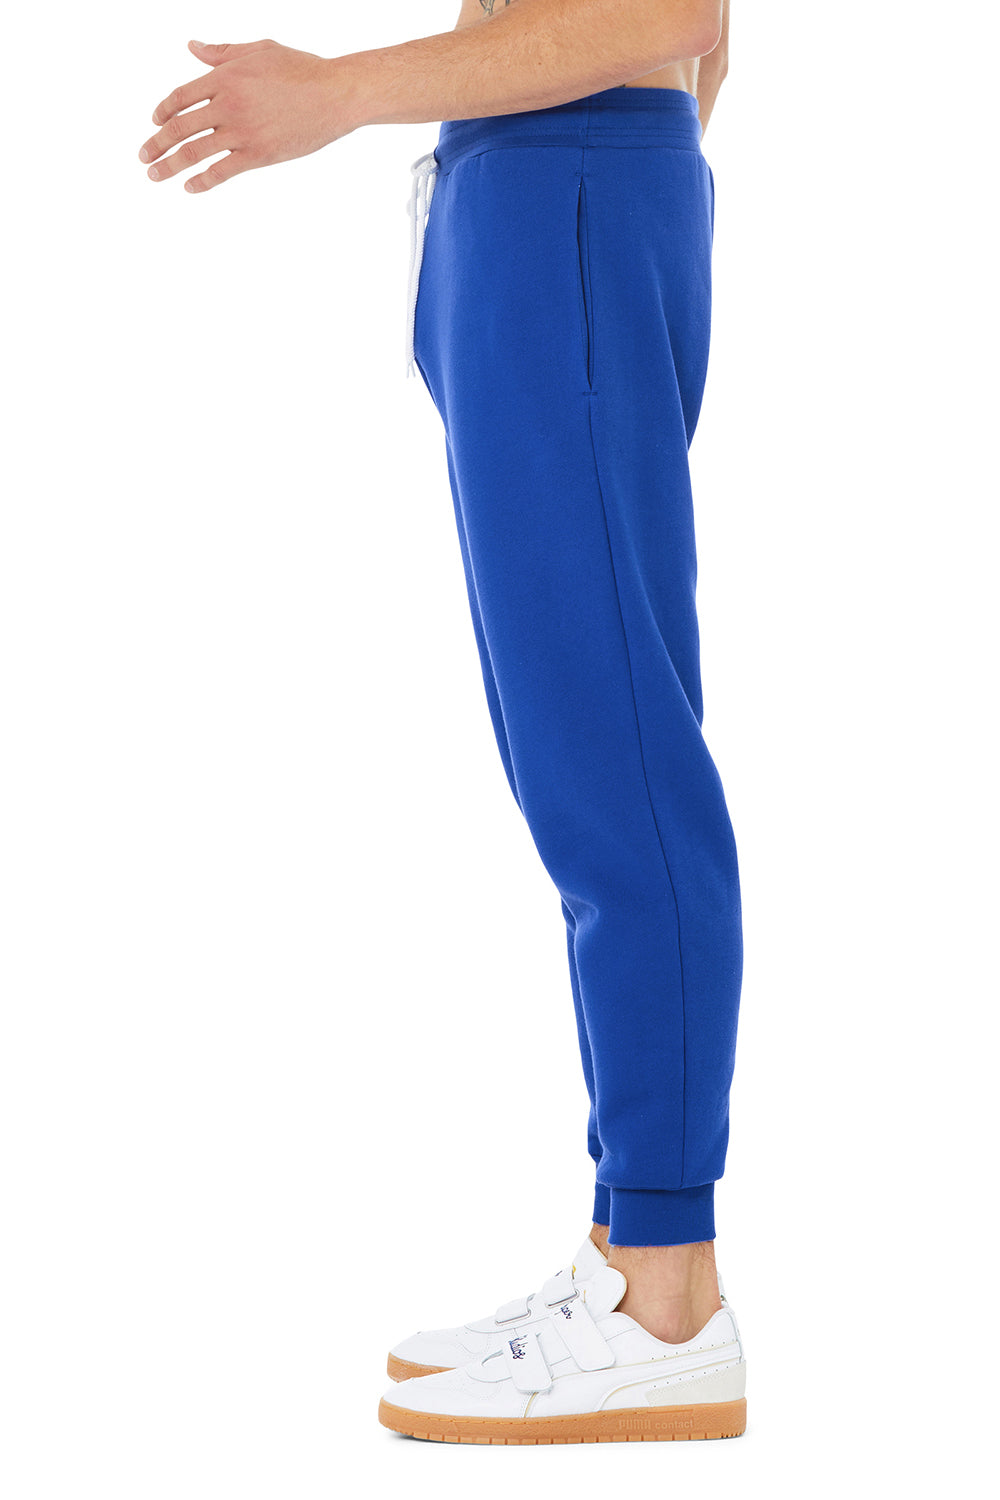 Bella + Canvas BC3727 Mens Jogger Sweatpants w/ Pockets True Royal Blue Model Side